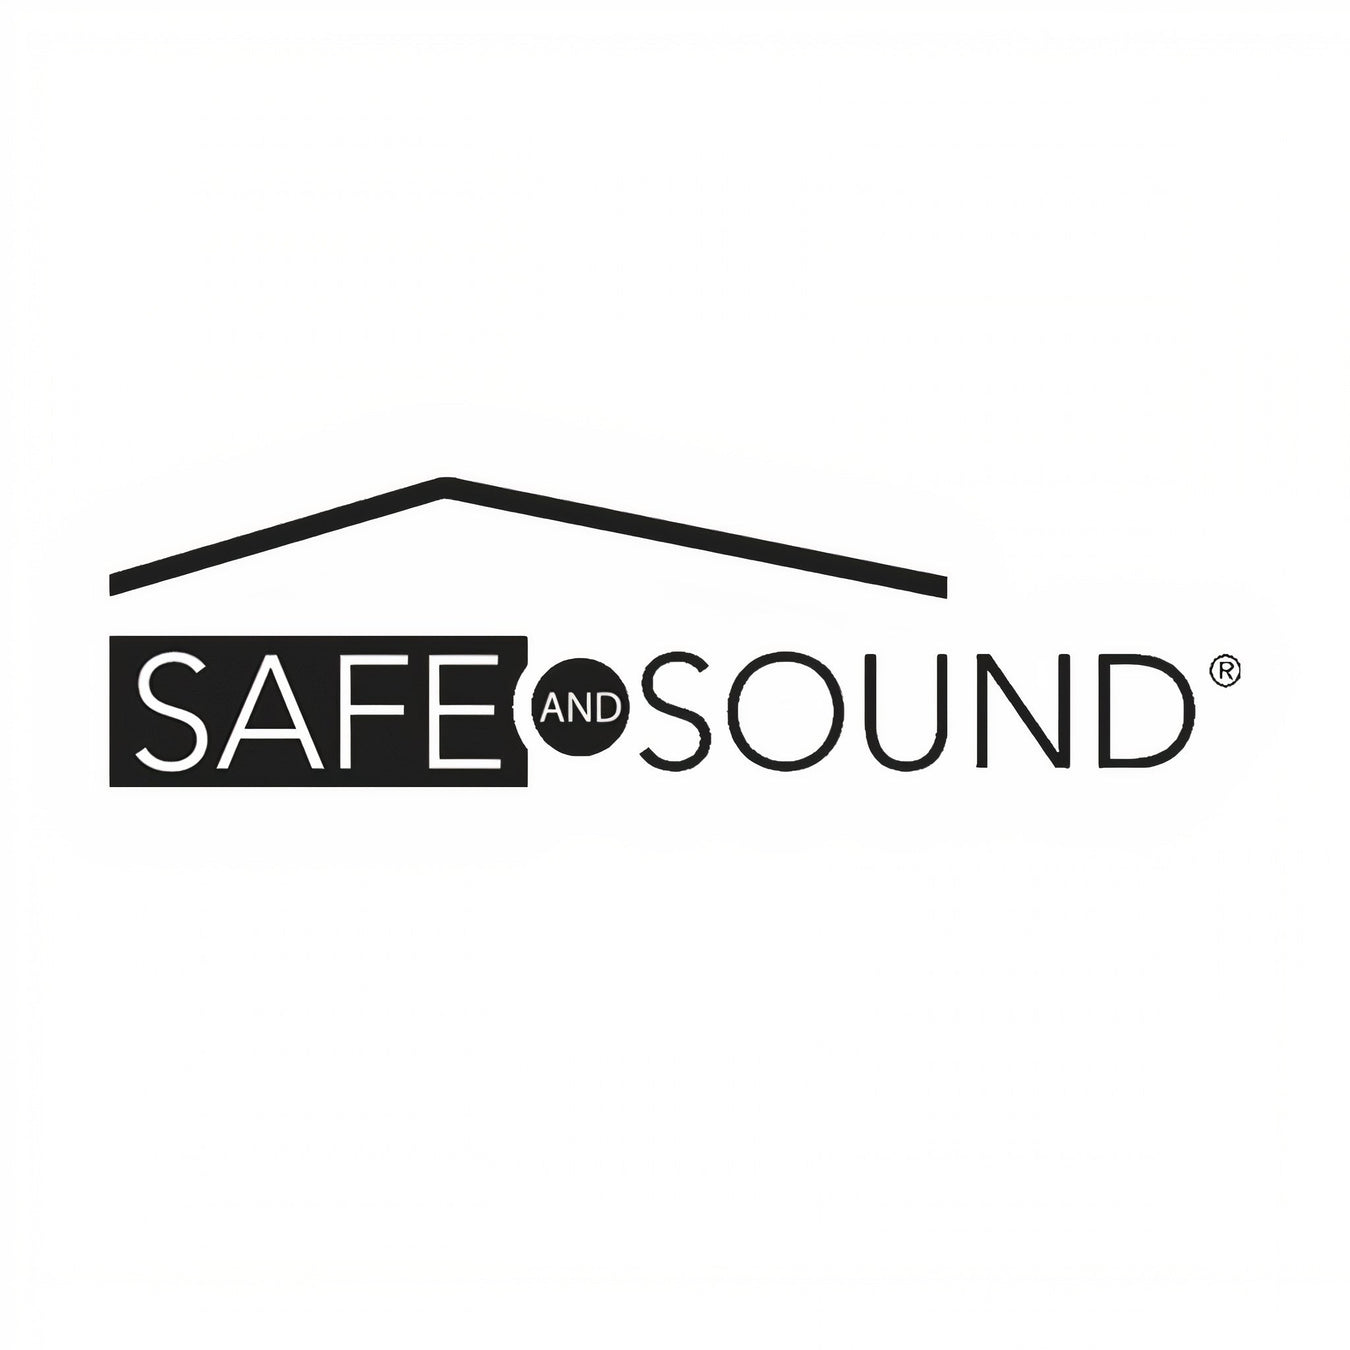 Safe and Sound brand logo